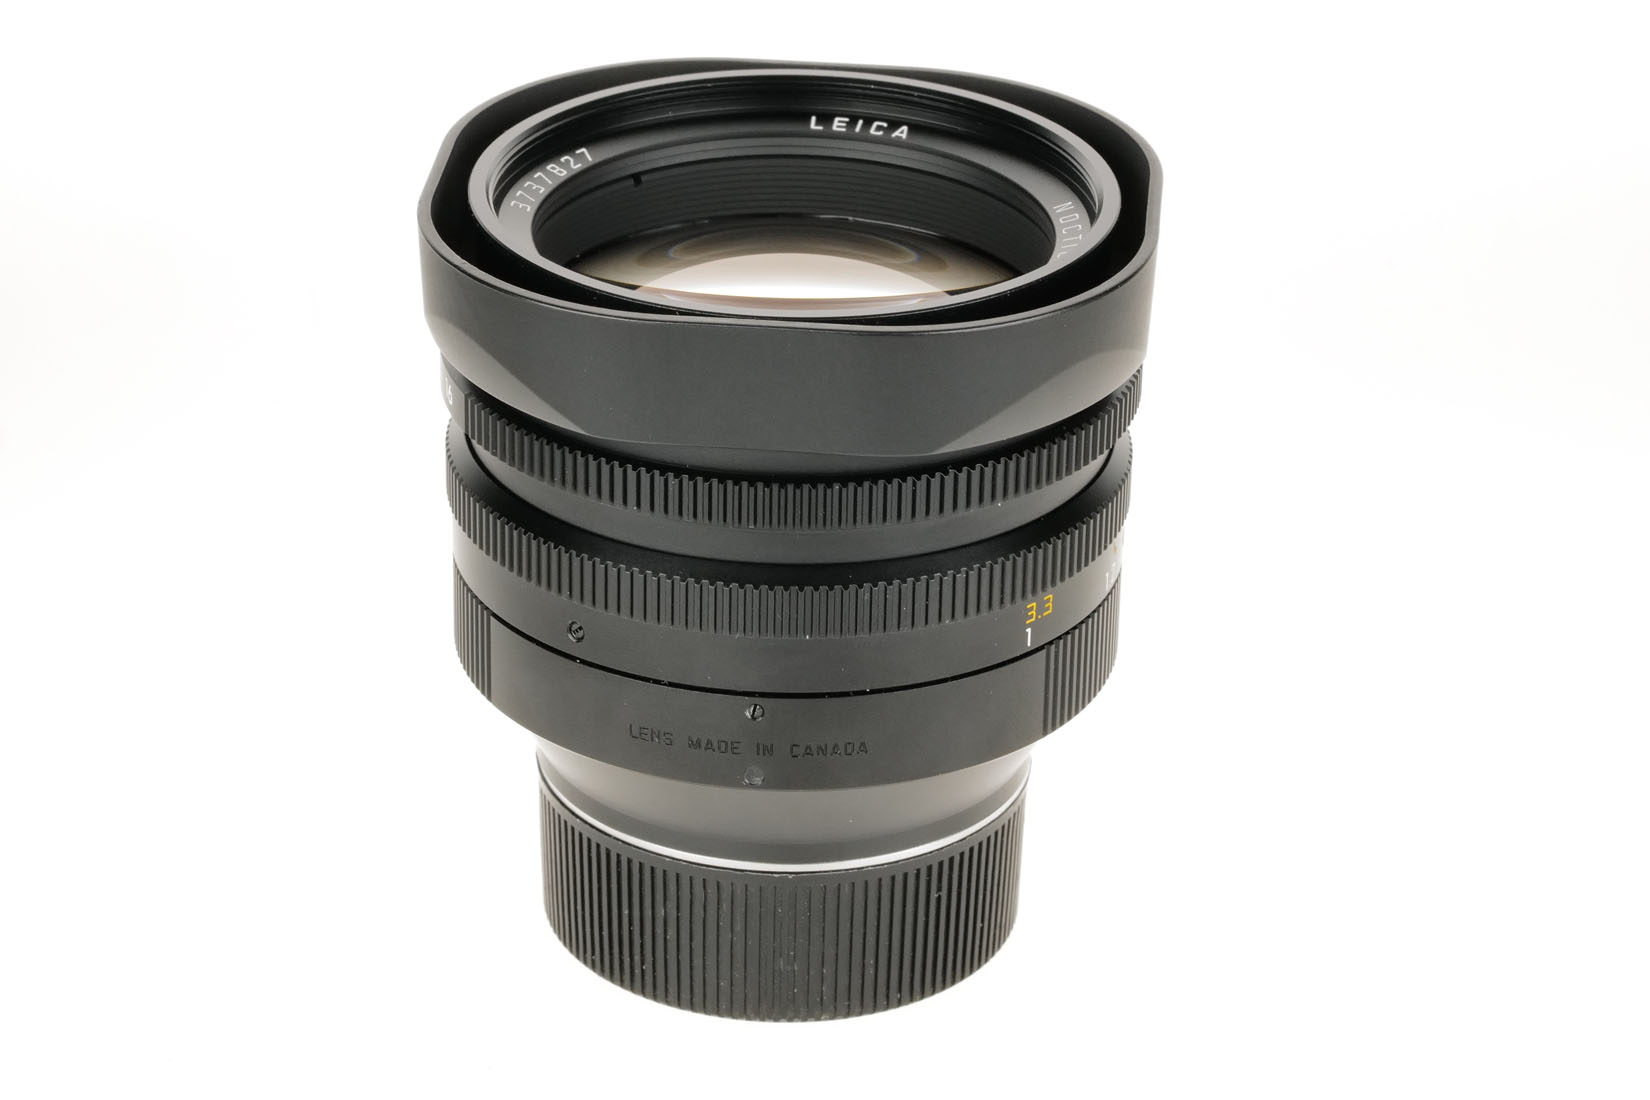 Leica NOCTILUX-M 1/50mm 11822